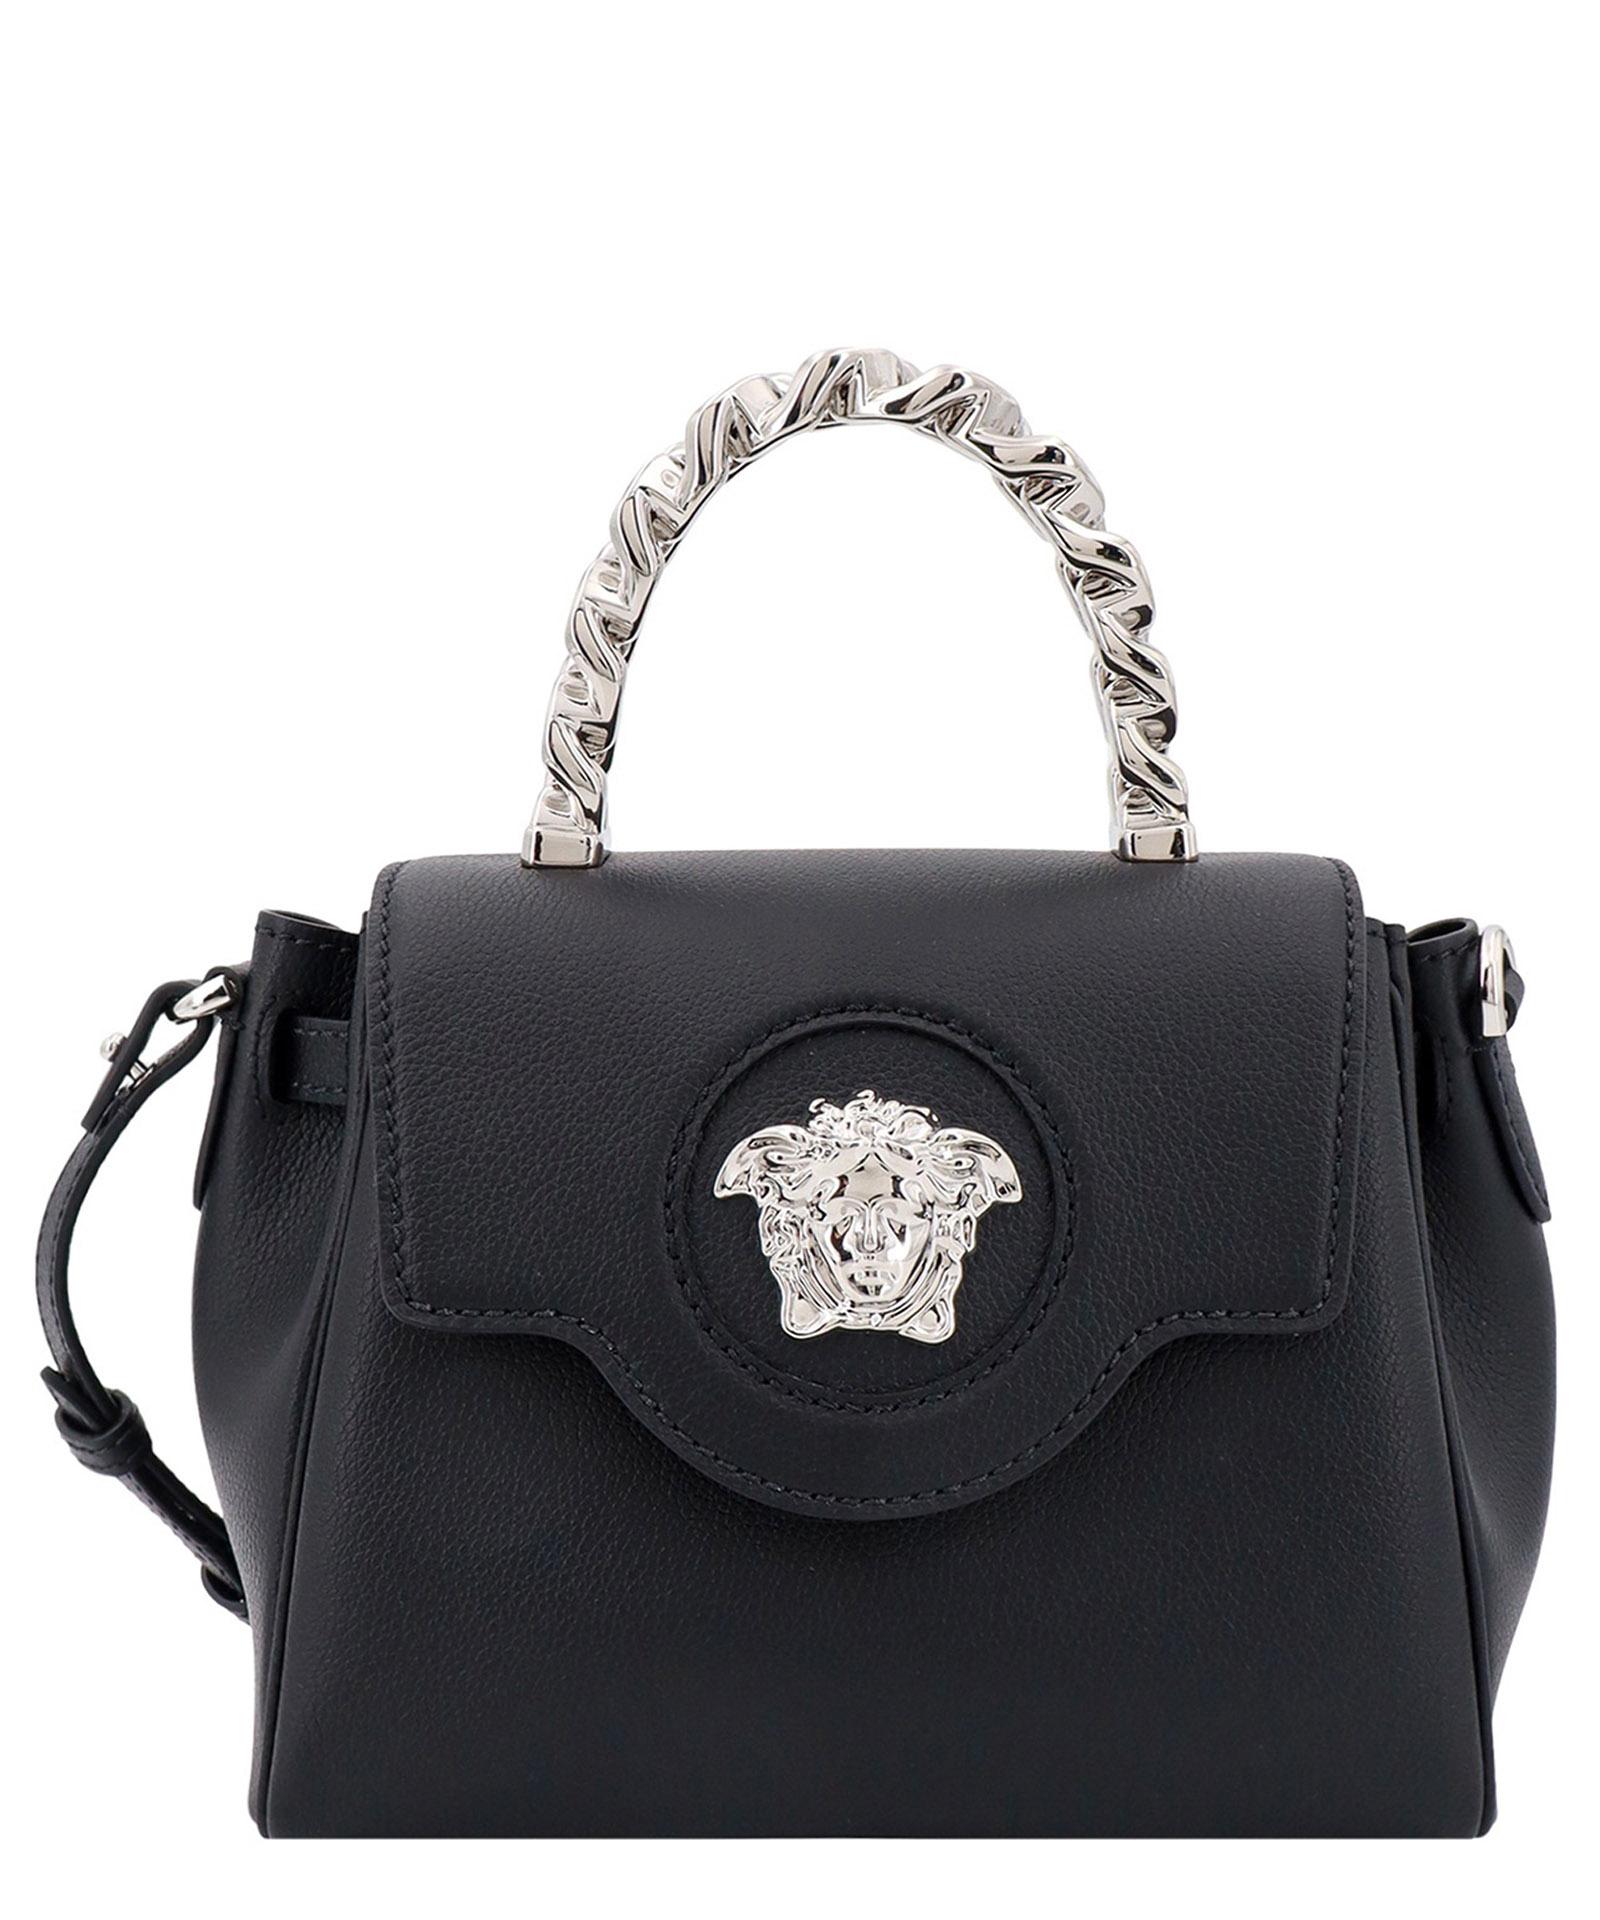 Versace La Medusa Handbag in Black | Lyst UK